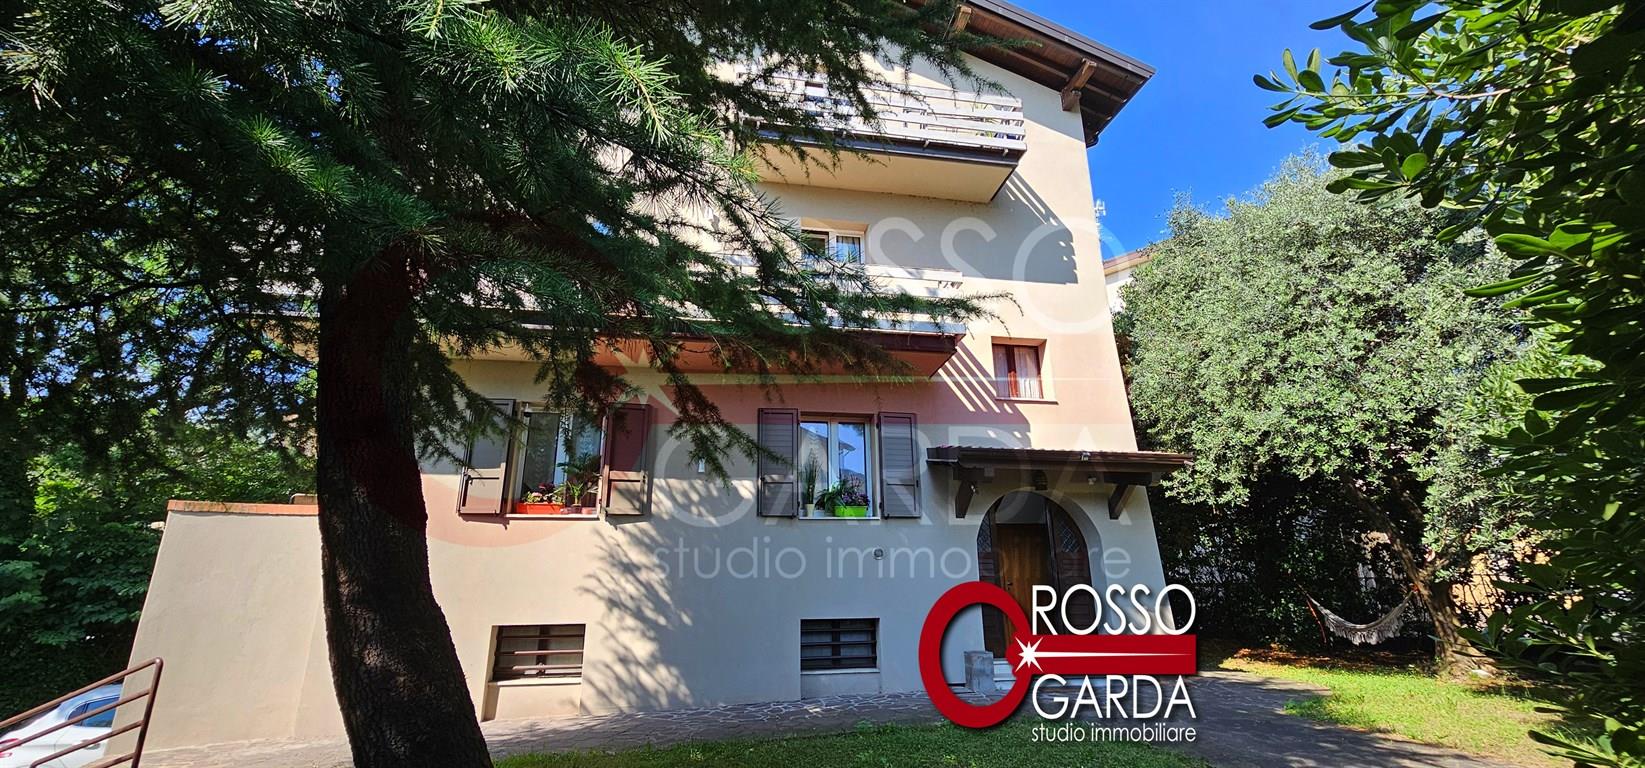 Appartamento di 180 mq su due livelli con 4 camere da letto e due bagni in affitto Desenzano del Garda